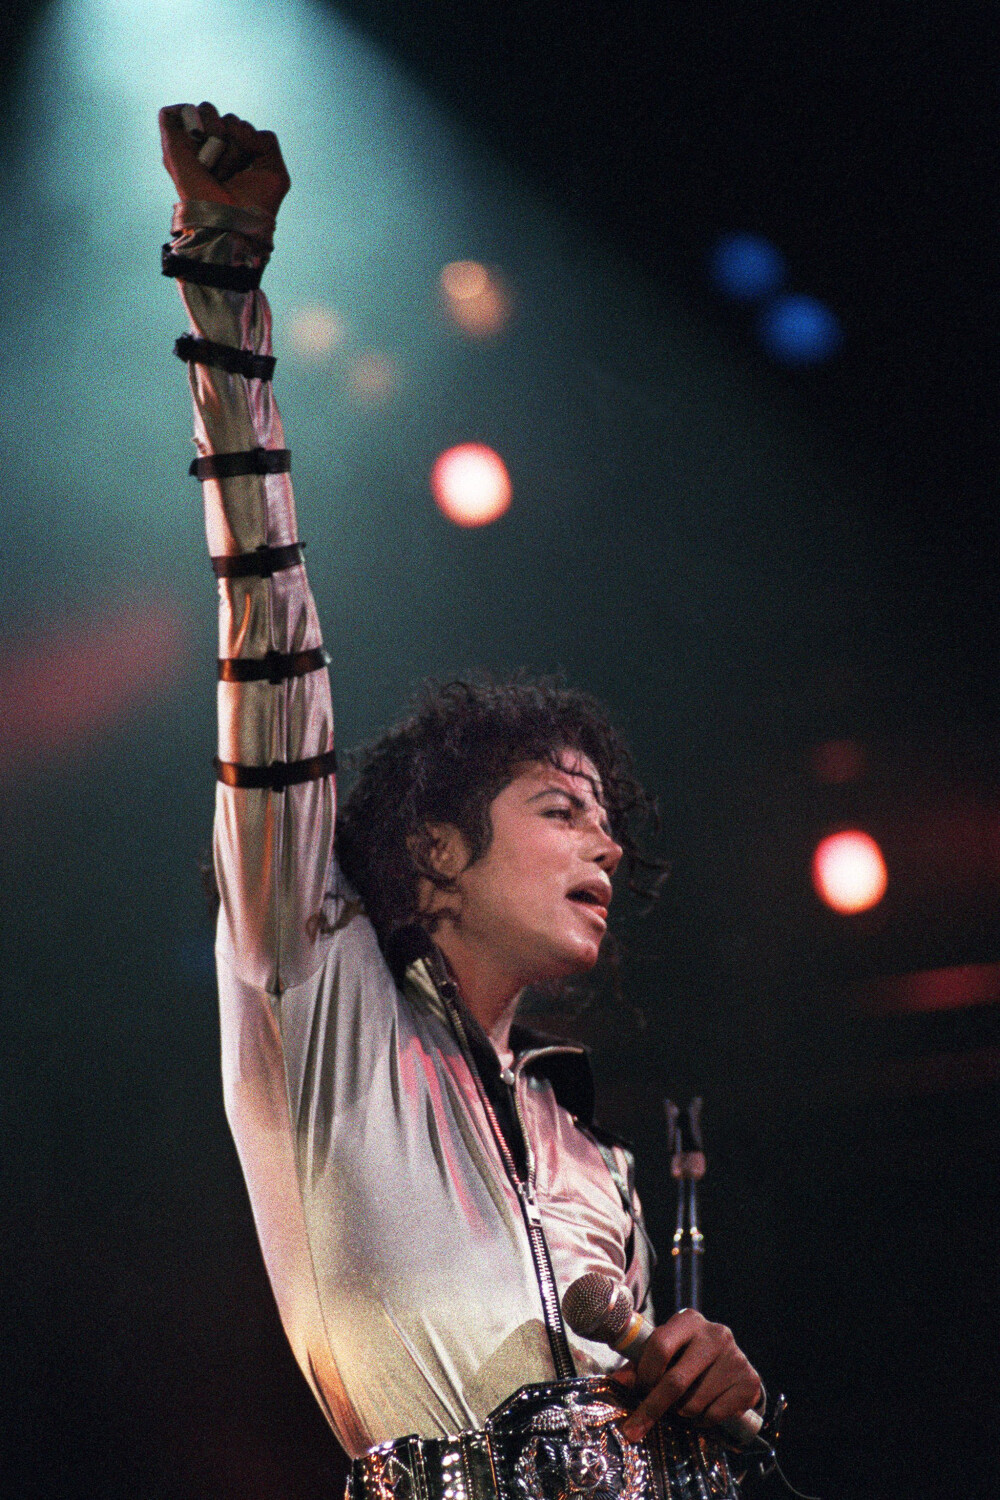 Imagini de colecție cu Michael Jackson. Regele muzicii pop ar fi împlinit 65 de ani | GALERIE FOTO - Imaginea 31